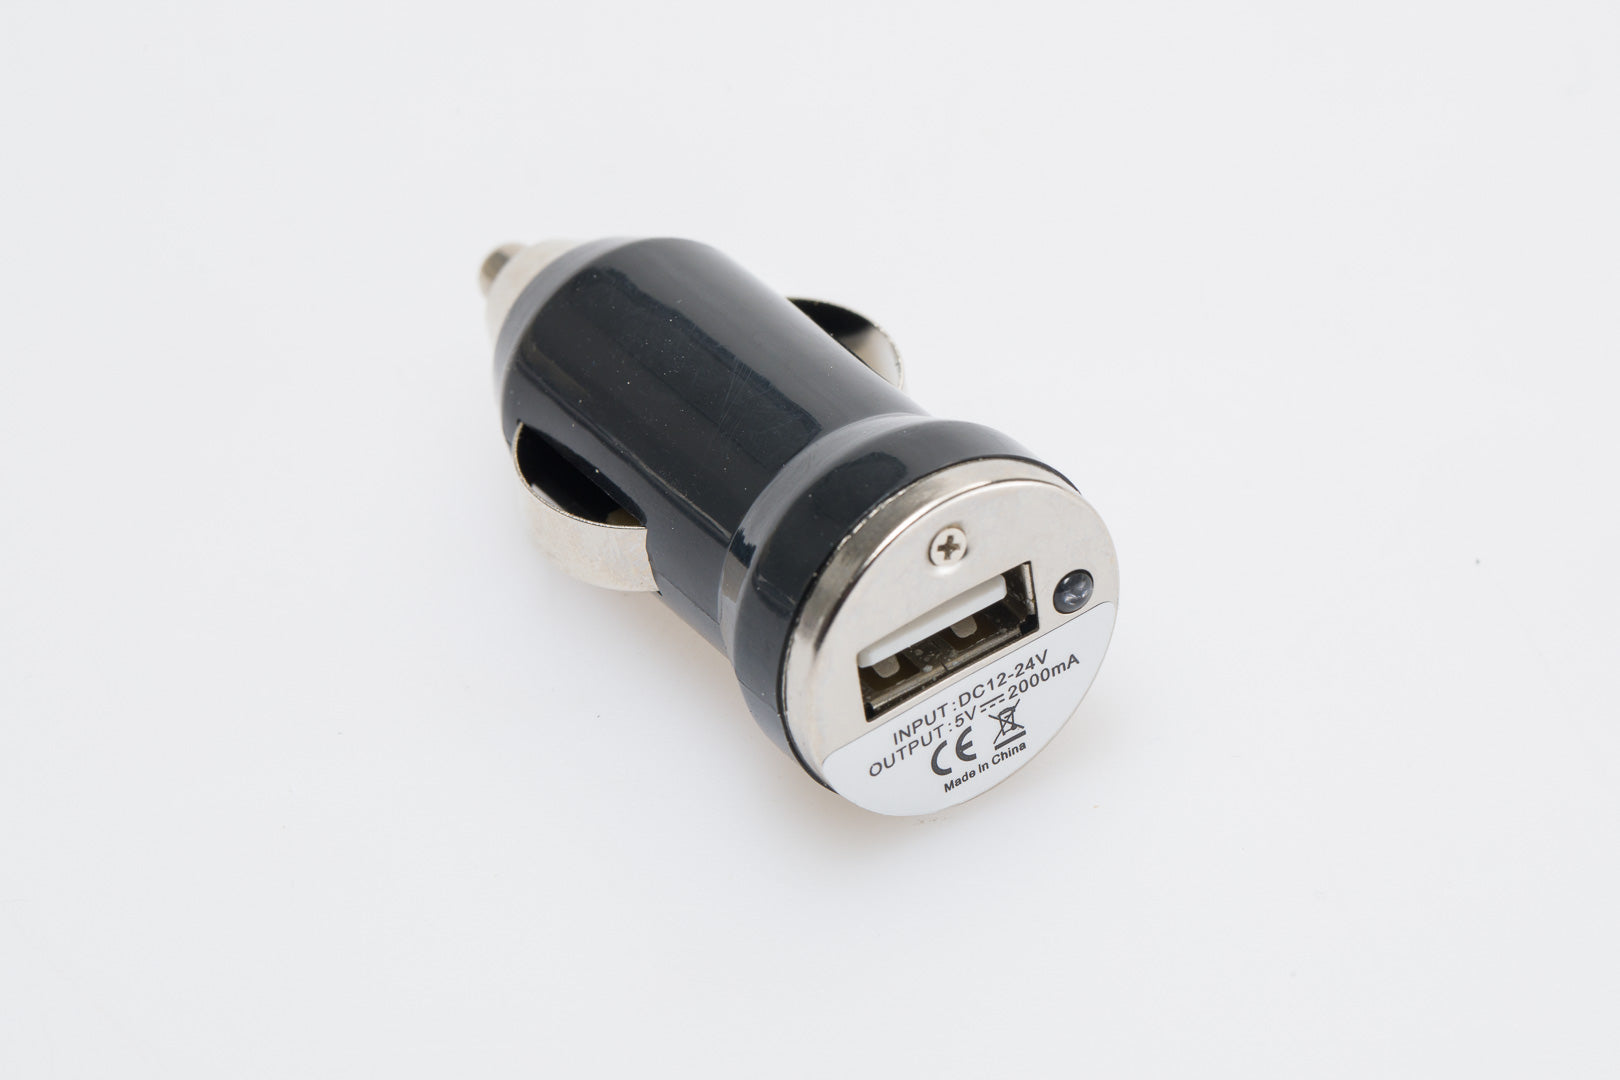 USB power port for cigarette lighter socket 2100 mA 12 V